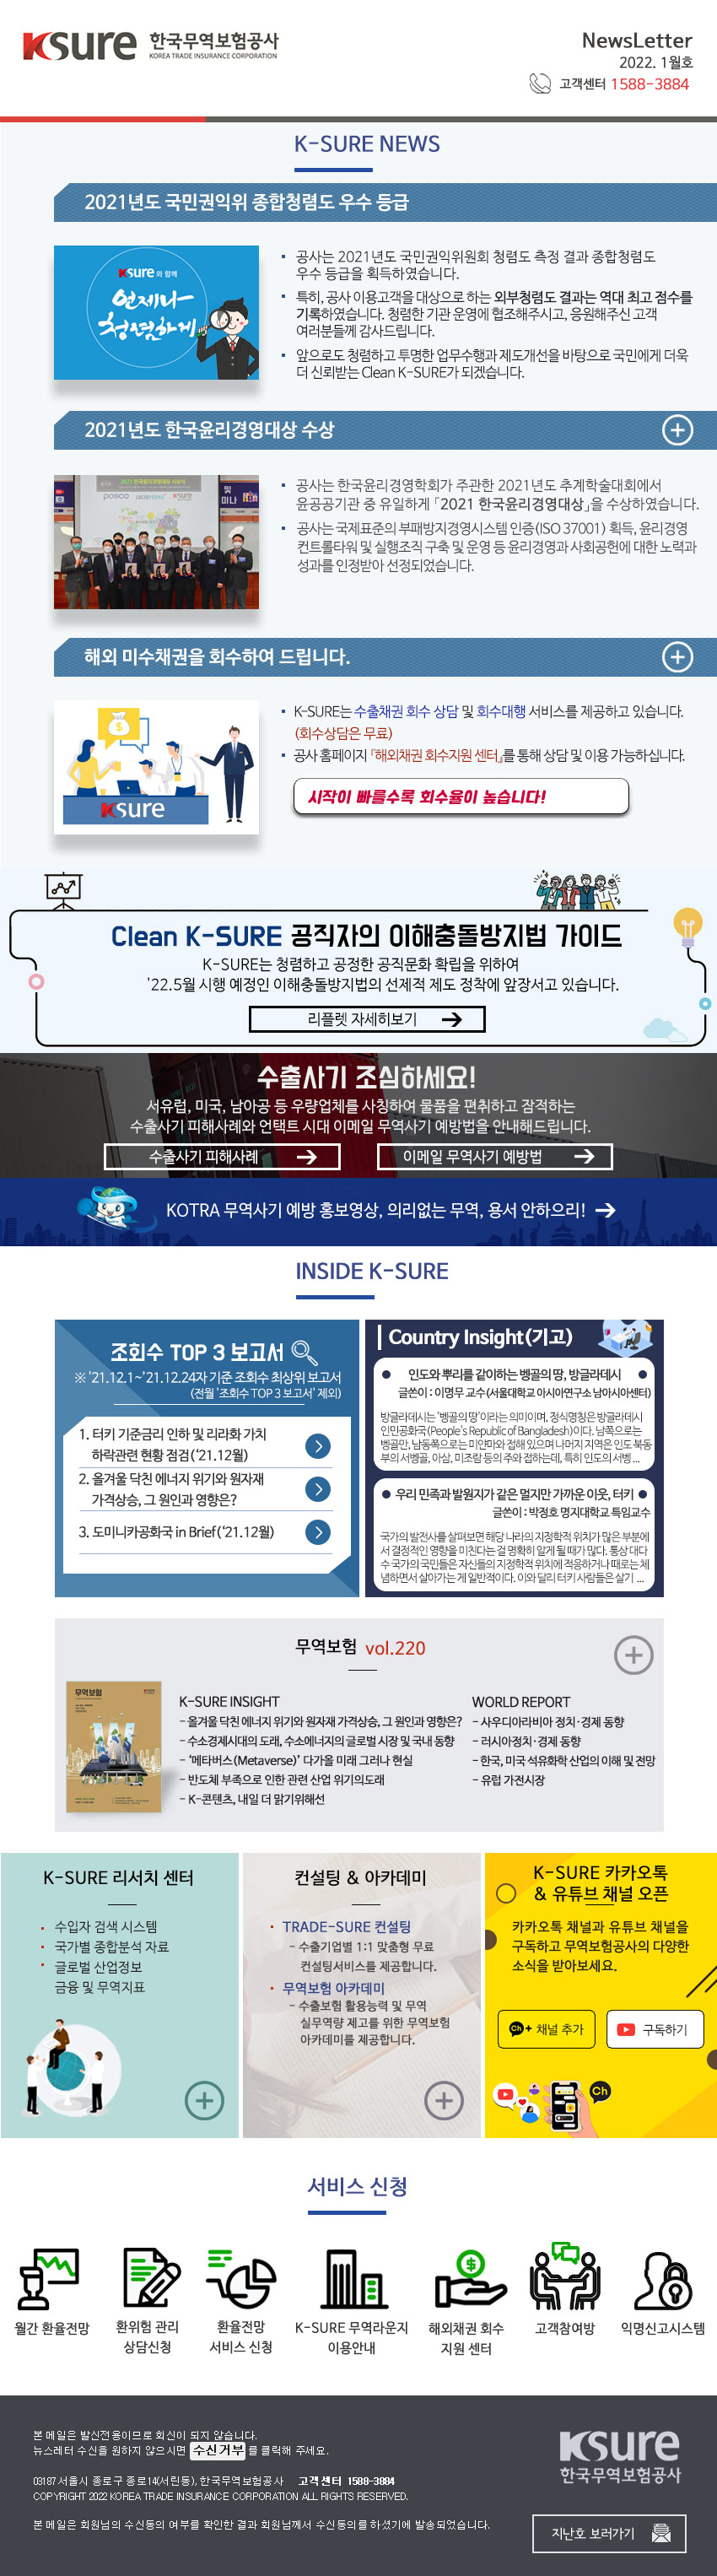 한국무역보험공사에서 보내드리는 2022년 1월 뉴스레터입니다.